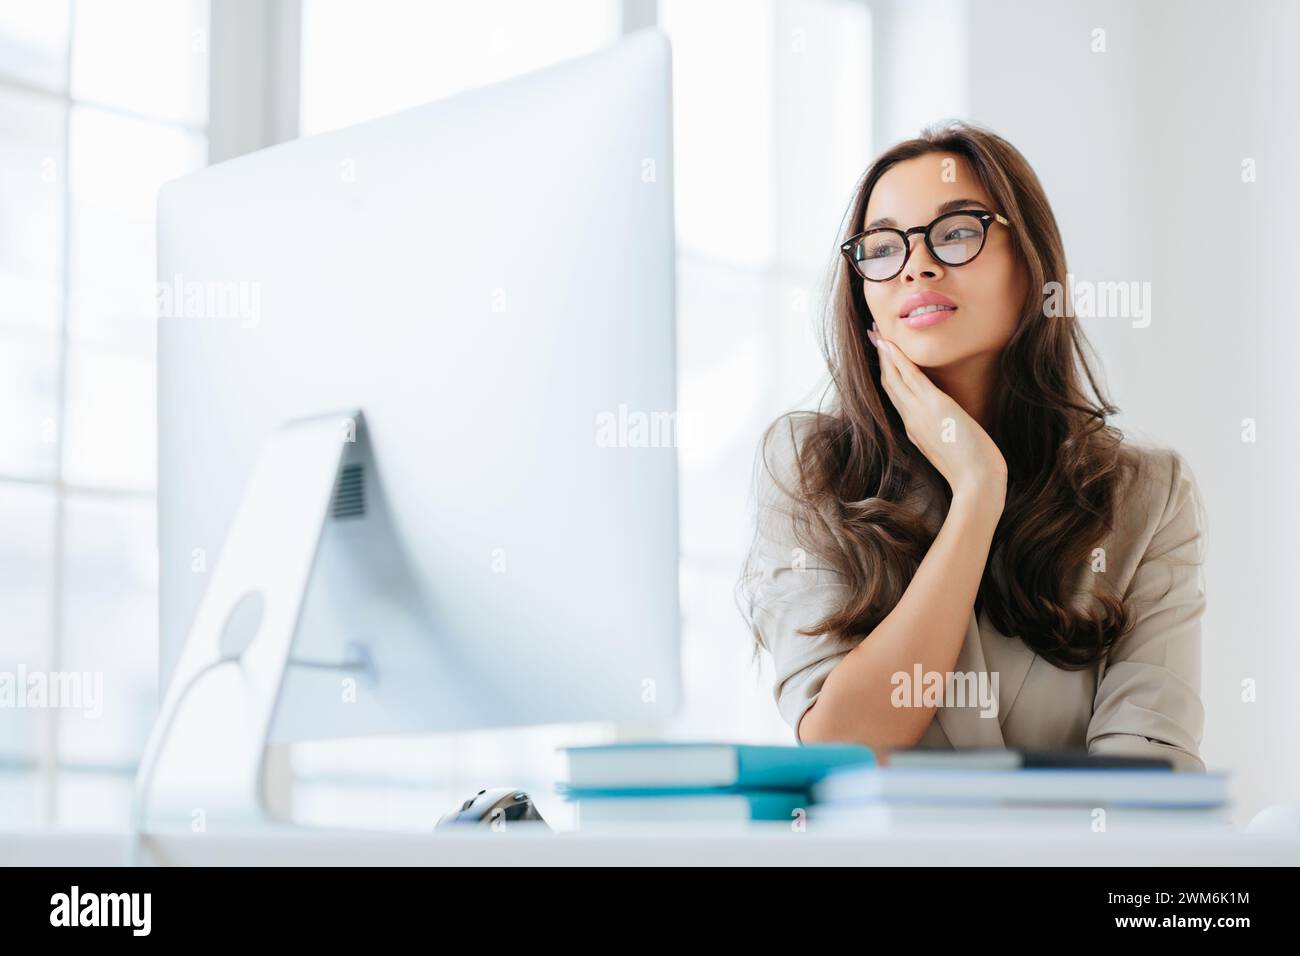 Träumende junge Frau mit einer Brille, die in einem hellen Büro in die Ferne blickt. Stockfoto